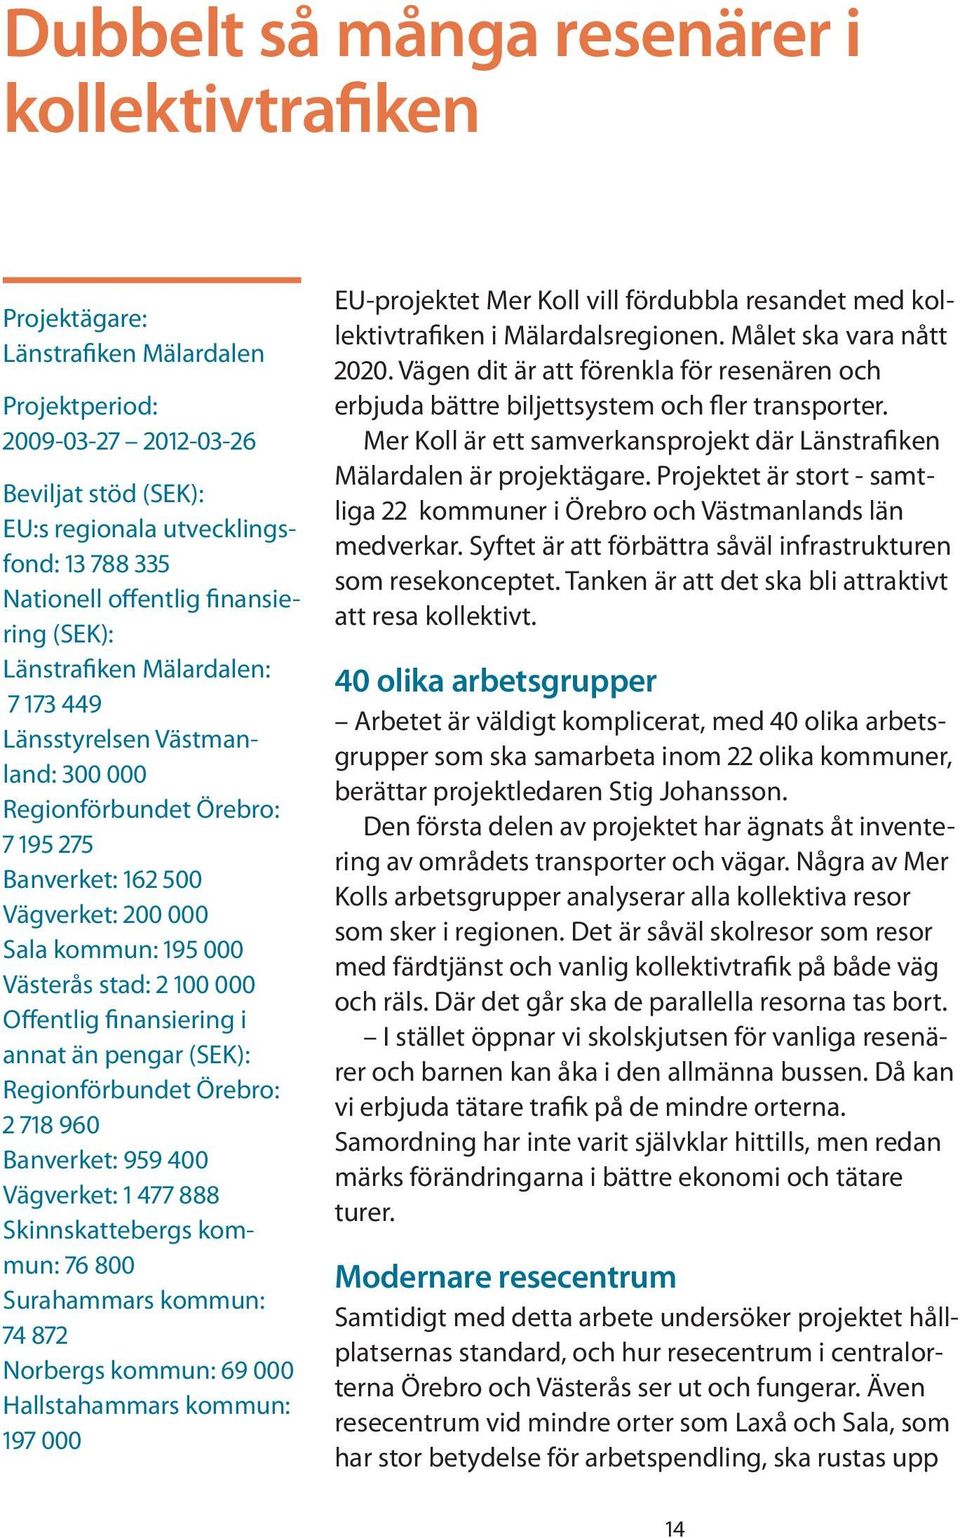 Västerås stad: 2 100 000 Offentlig finansiering i annat än pengar (SEK): Regionförbundet Örebro: 2 718 960 Banverket: 959 400 Vägverket: 1 477 888 Skinnskattebergs kommun: 76 800 Surahammars kommun: